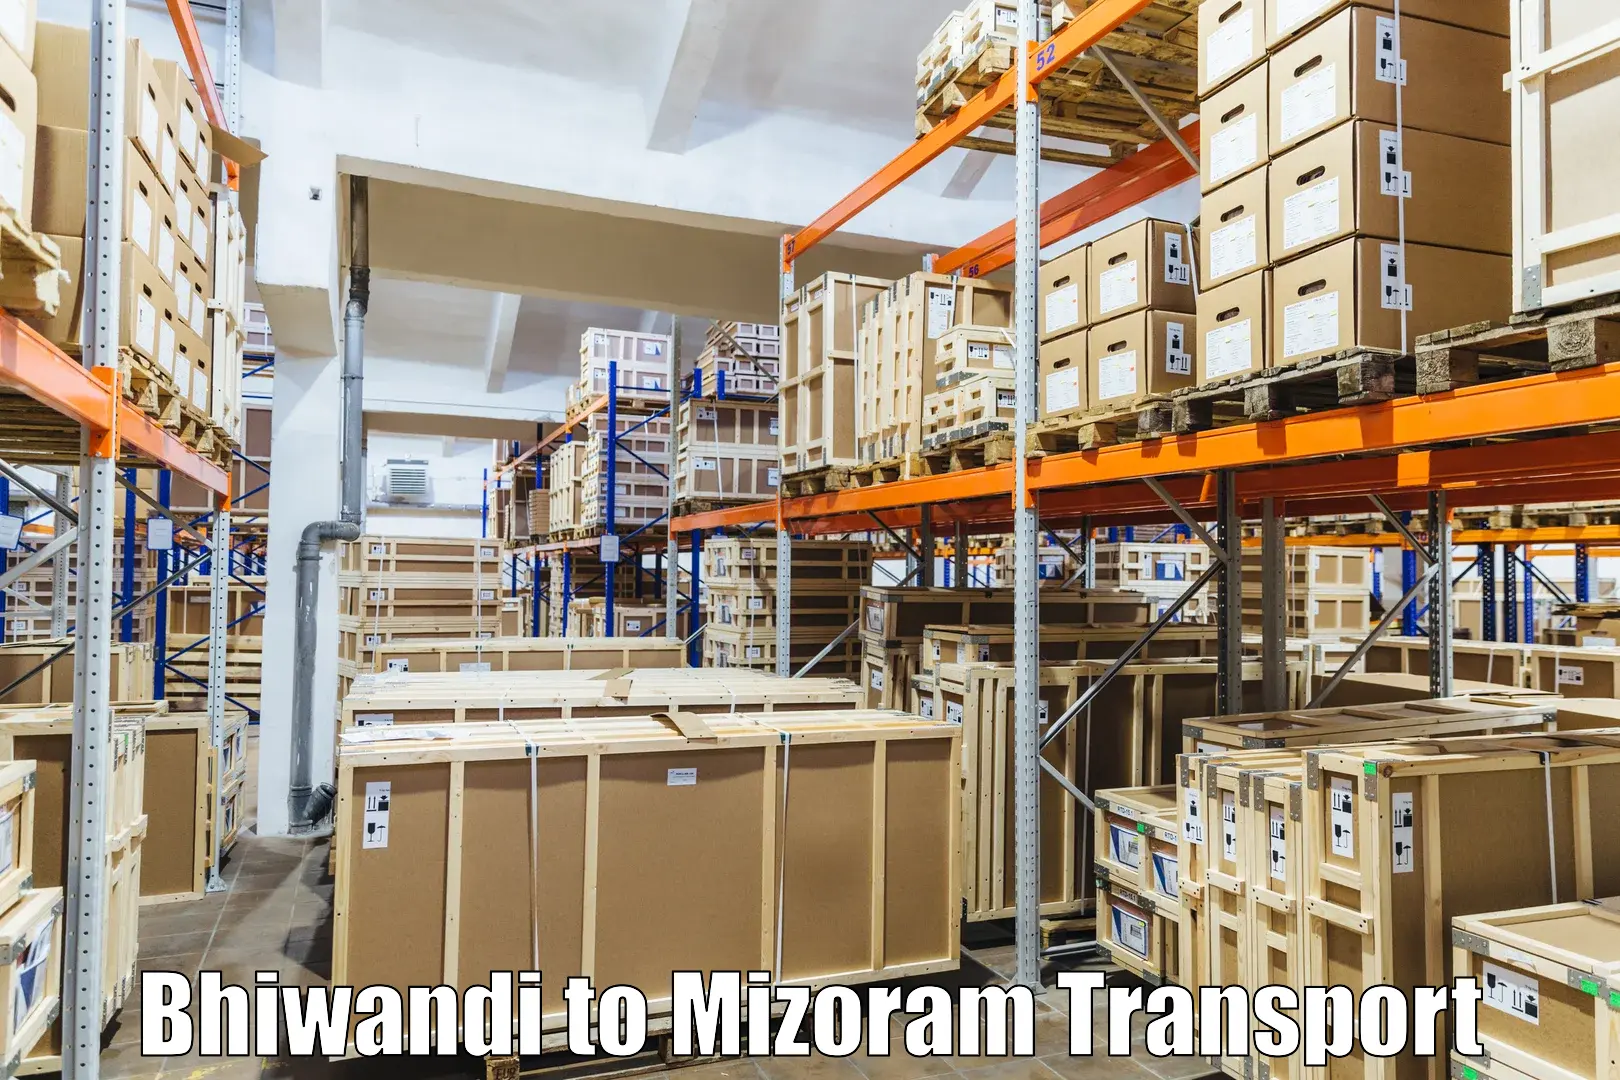 Delivery service Bhiwandi to Khawzawl